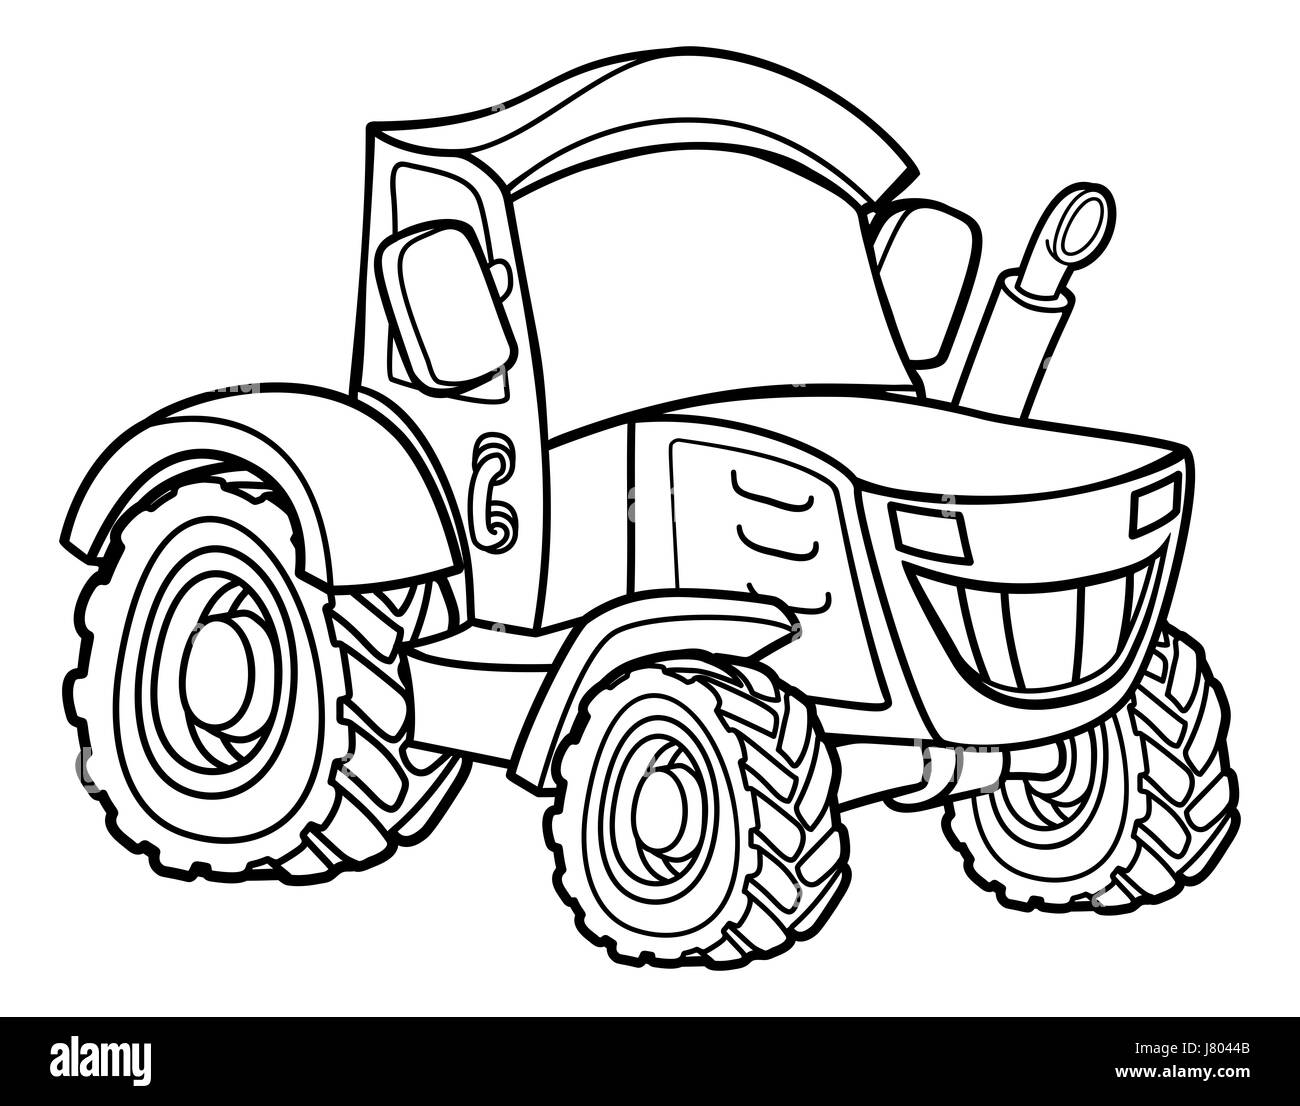 Véhicule tracteur agricole cartoon illustration Banque D'Images